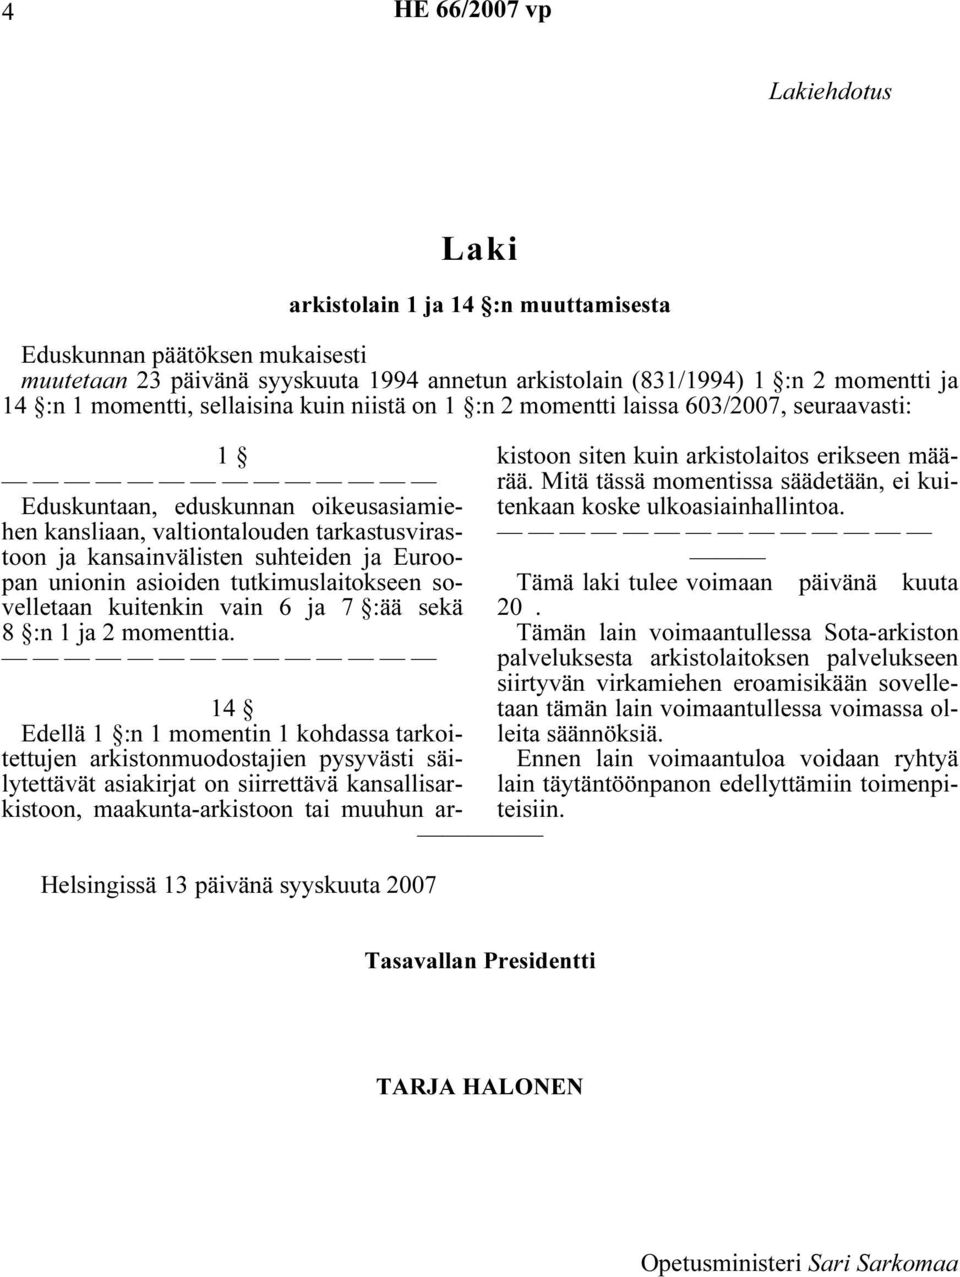 sovelletaan kuitenkin vain 6 ja 7 :ää sekä 8 :n 1 ja 2 momenttia. Helsingissä 13 päivänä syyskuuta 2007 koske ulkoasiainhallintoa. Tämä laki tulee voimaan päivänä kuuta 20.